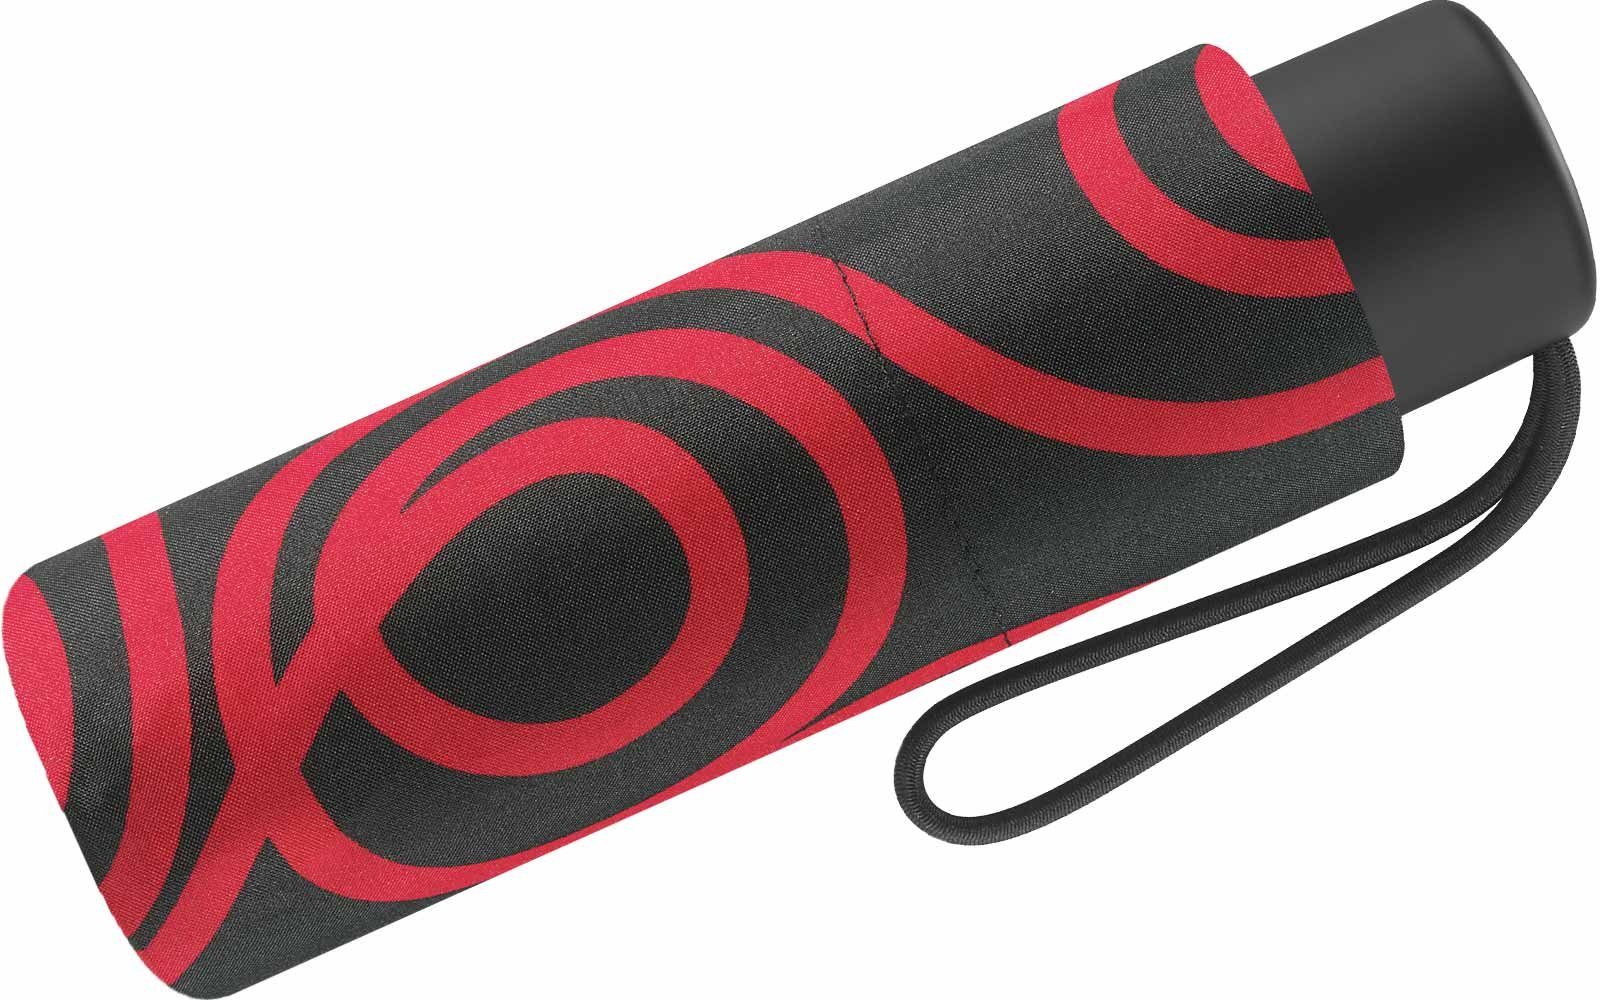 Pierre Cardin Taschenregenschirm winziger Damen-Regenschirm Handöffner, schwarz-rot mit schwarzem mit Grund Kreise-Muster rotem auf